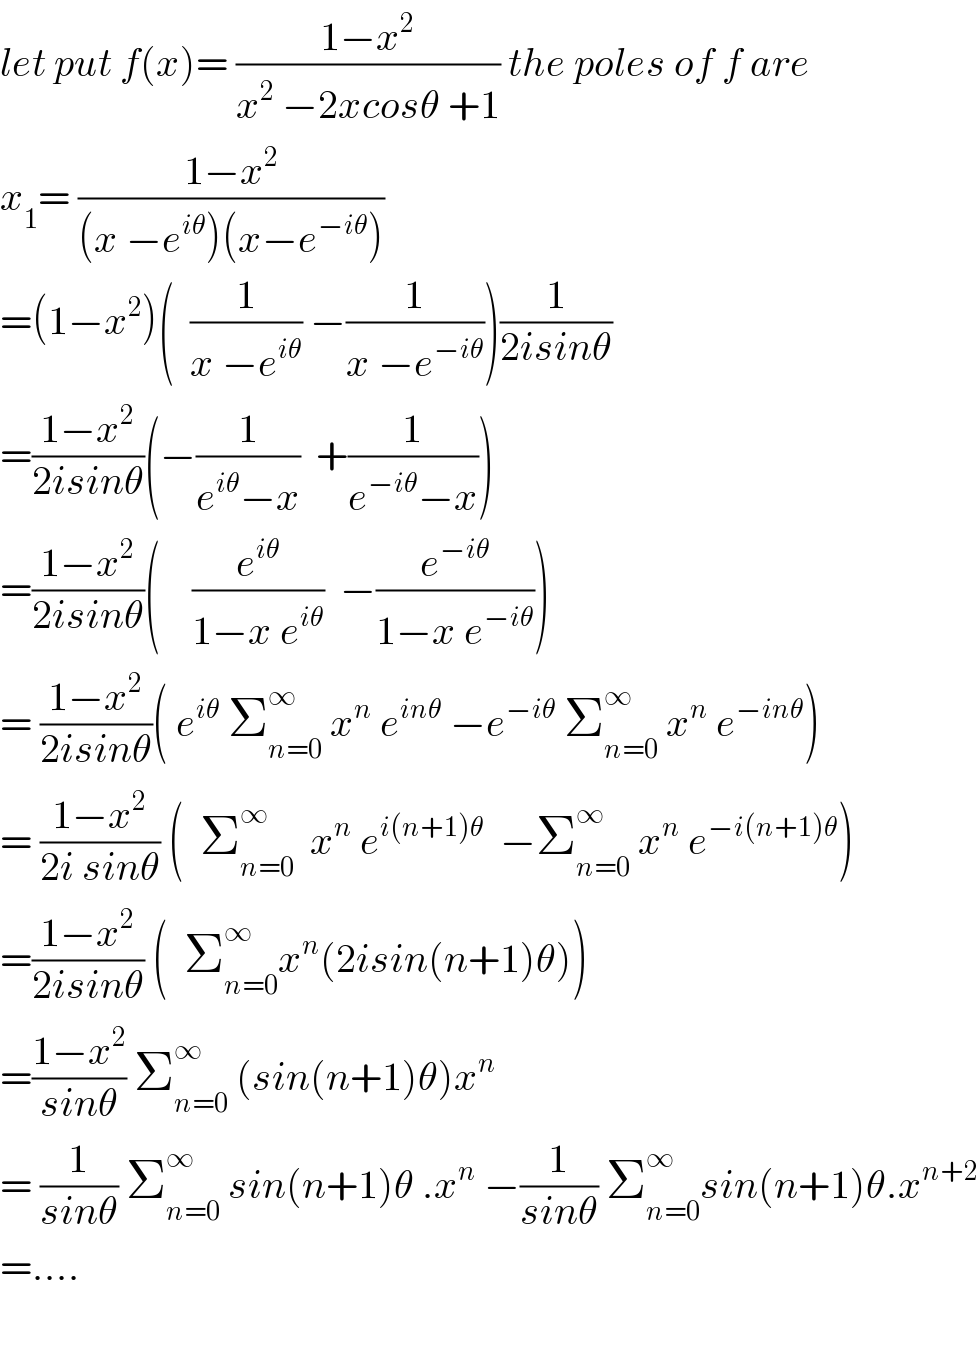 let put f(x)= ((1−x^2 )/(x^2  −2xcosθ +1)) the poles of f are  x_1 = ((1−x^2 )/((x −e^(iθ) )(x−e^(−iθ) )))  =(1−x^2 )(  (1/(x −e^(iθ) )) −(1/(x −e^(−iθ) )))(1/(2isinθ))  =((1−x^2 )/(2isinθ))(−(1/(e^(iθ) −x))  +(1/(e^(−iθ) −x)))  =((1−x^2 )/(2isinθ))(    (e^(iθ) /(1−x e^(iθ) ))  −(e^(−iθ) /(1−x e^(−iθ) )))  = ((1−x^2 )/(2isinθ))( e^(iθ)  Σ_(n=0) ^∞  x^n  e^(inθ)  −e^(−iθ)  Σ_(n=0) ^∞  x^n  e^(−inθ) )  = ((1−x^2 )/(2i sinθ)) (  Σ_(n=0) ^∞   x^n  e^(i(n+1)θ)   −Σ_(n=0) ^∞  x^n  e^(−i(n+1)θ) )  =((1−x^2 )/(2isinθ)) (  Σ_(n=0) ^∞ x^n (2isin(n+1)θ))  =((1−x^2 )/(sinθ)) Σ_(n=0) ^∞  (sin(n+1)θ)x^n   = (1/(sinθ)) Σ_(n=0) ^∞  sin(n+1)θ .x^n  −(1/(sinθ)) Σ_(n=0) ^∞ sin(n+1)θ.x^(n+2)   =....    